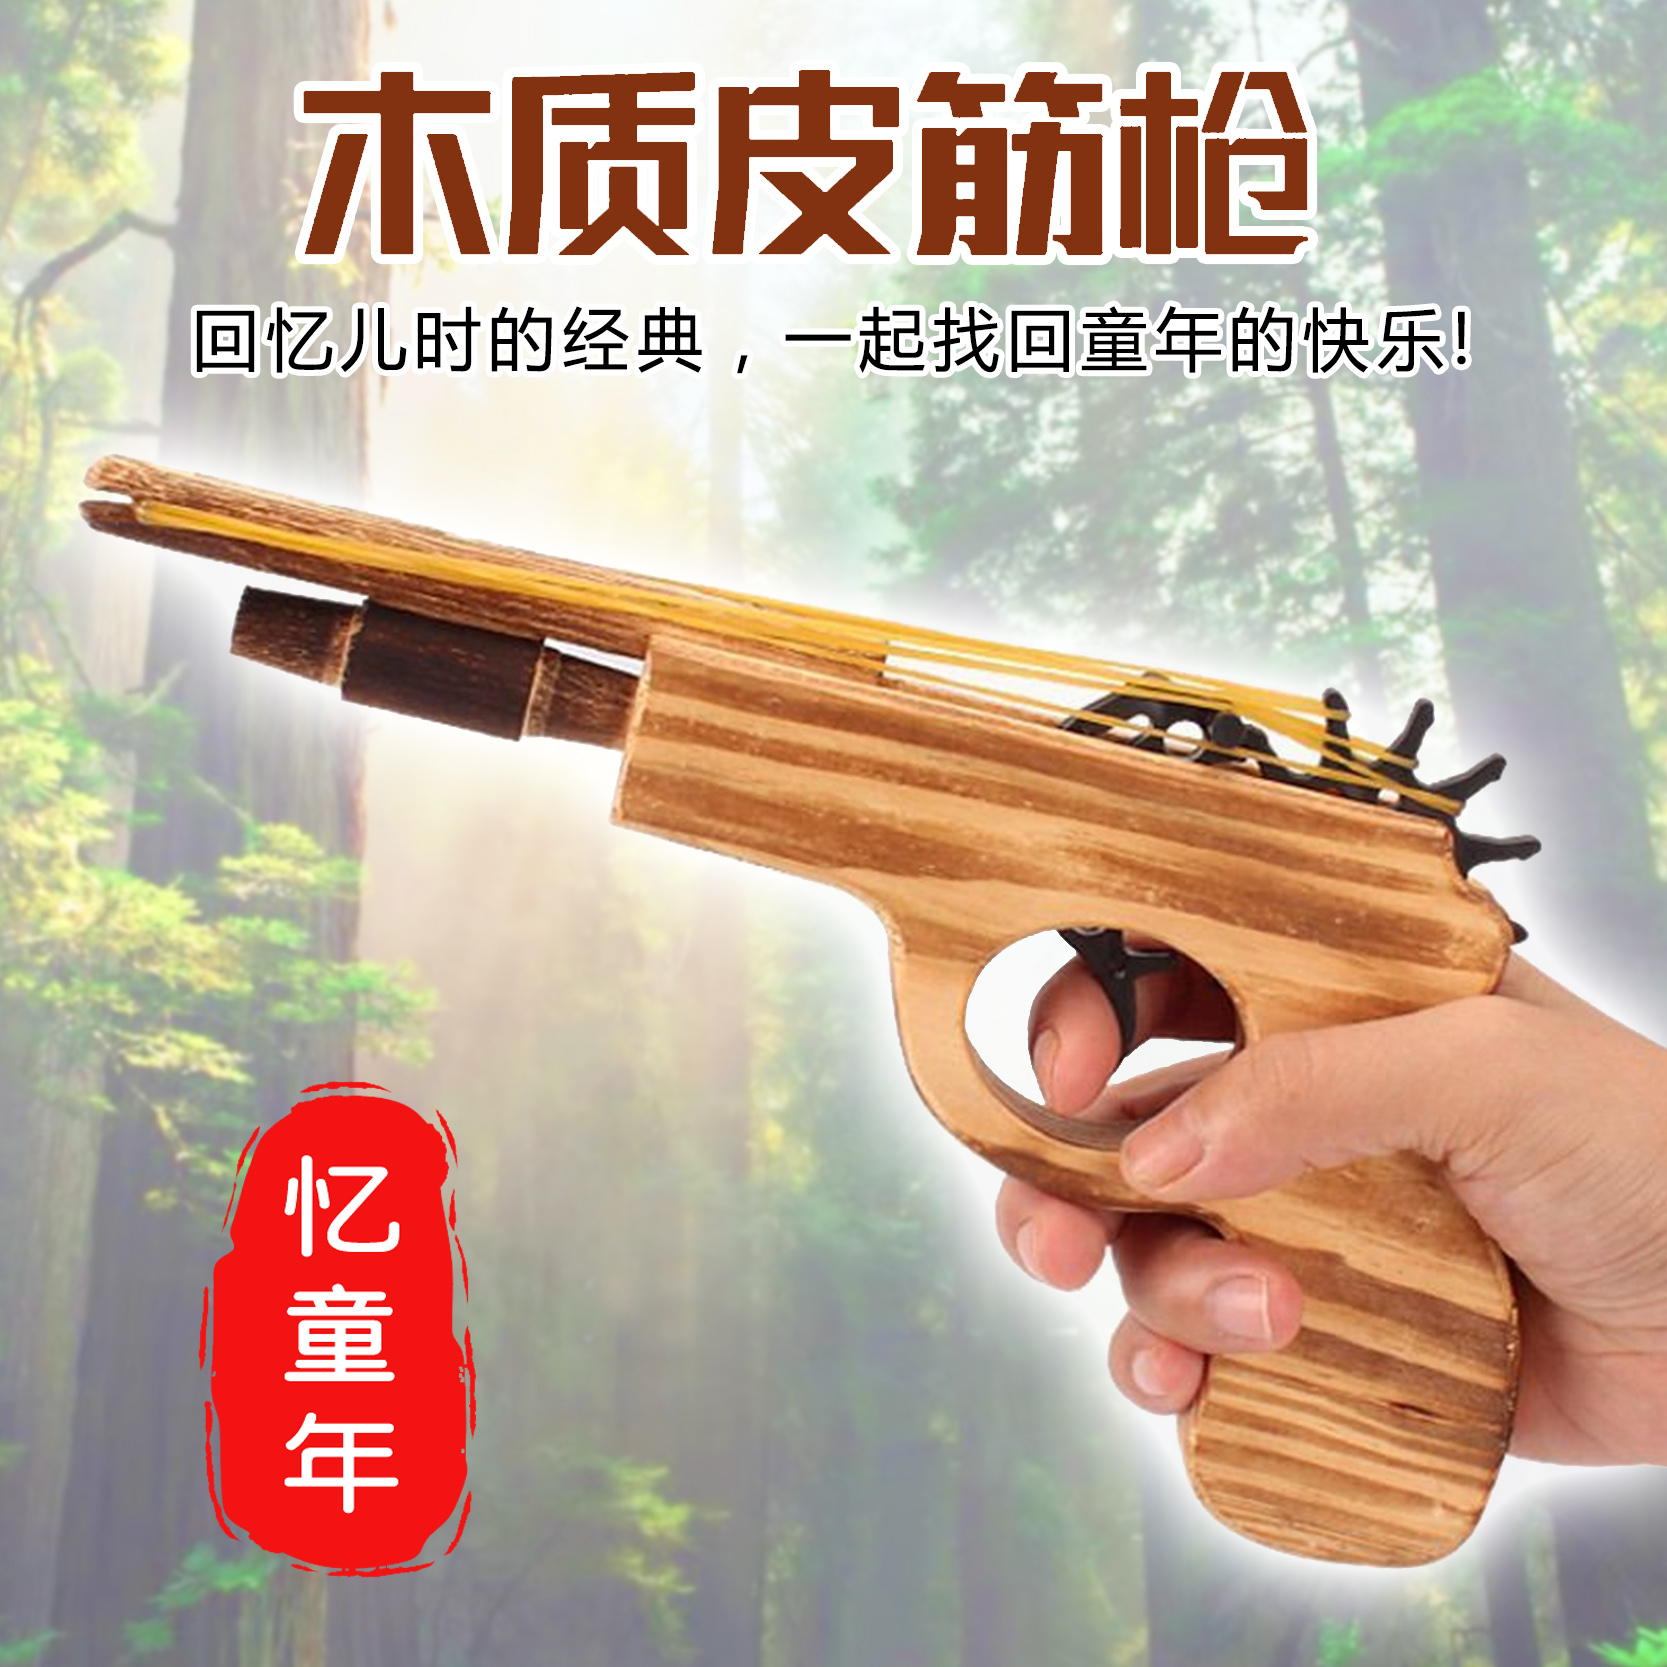 木制皮筋枪双管木头枪木质皮筋手枪怀旧经典儿童玩具亲子益智